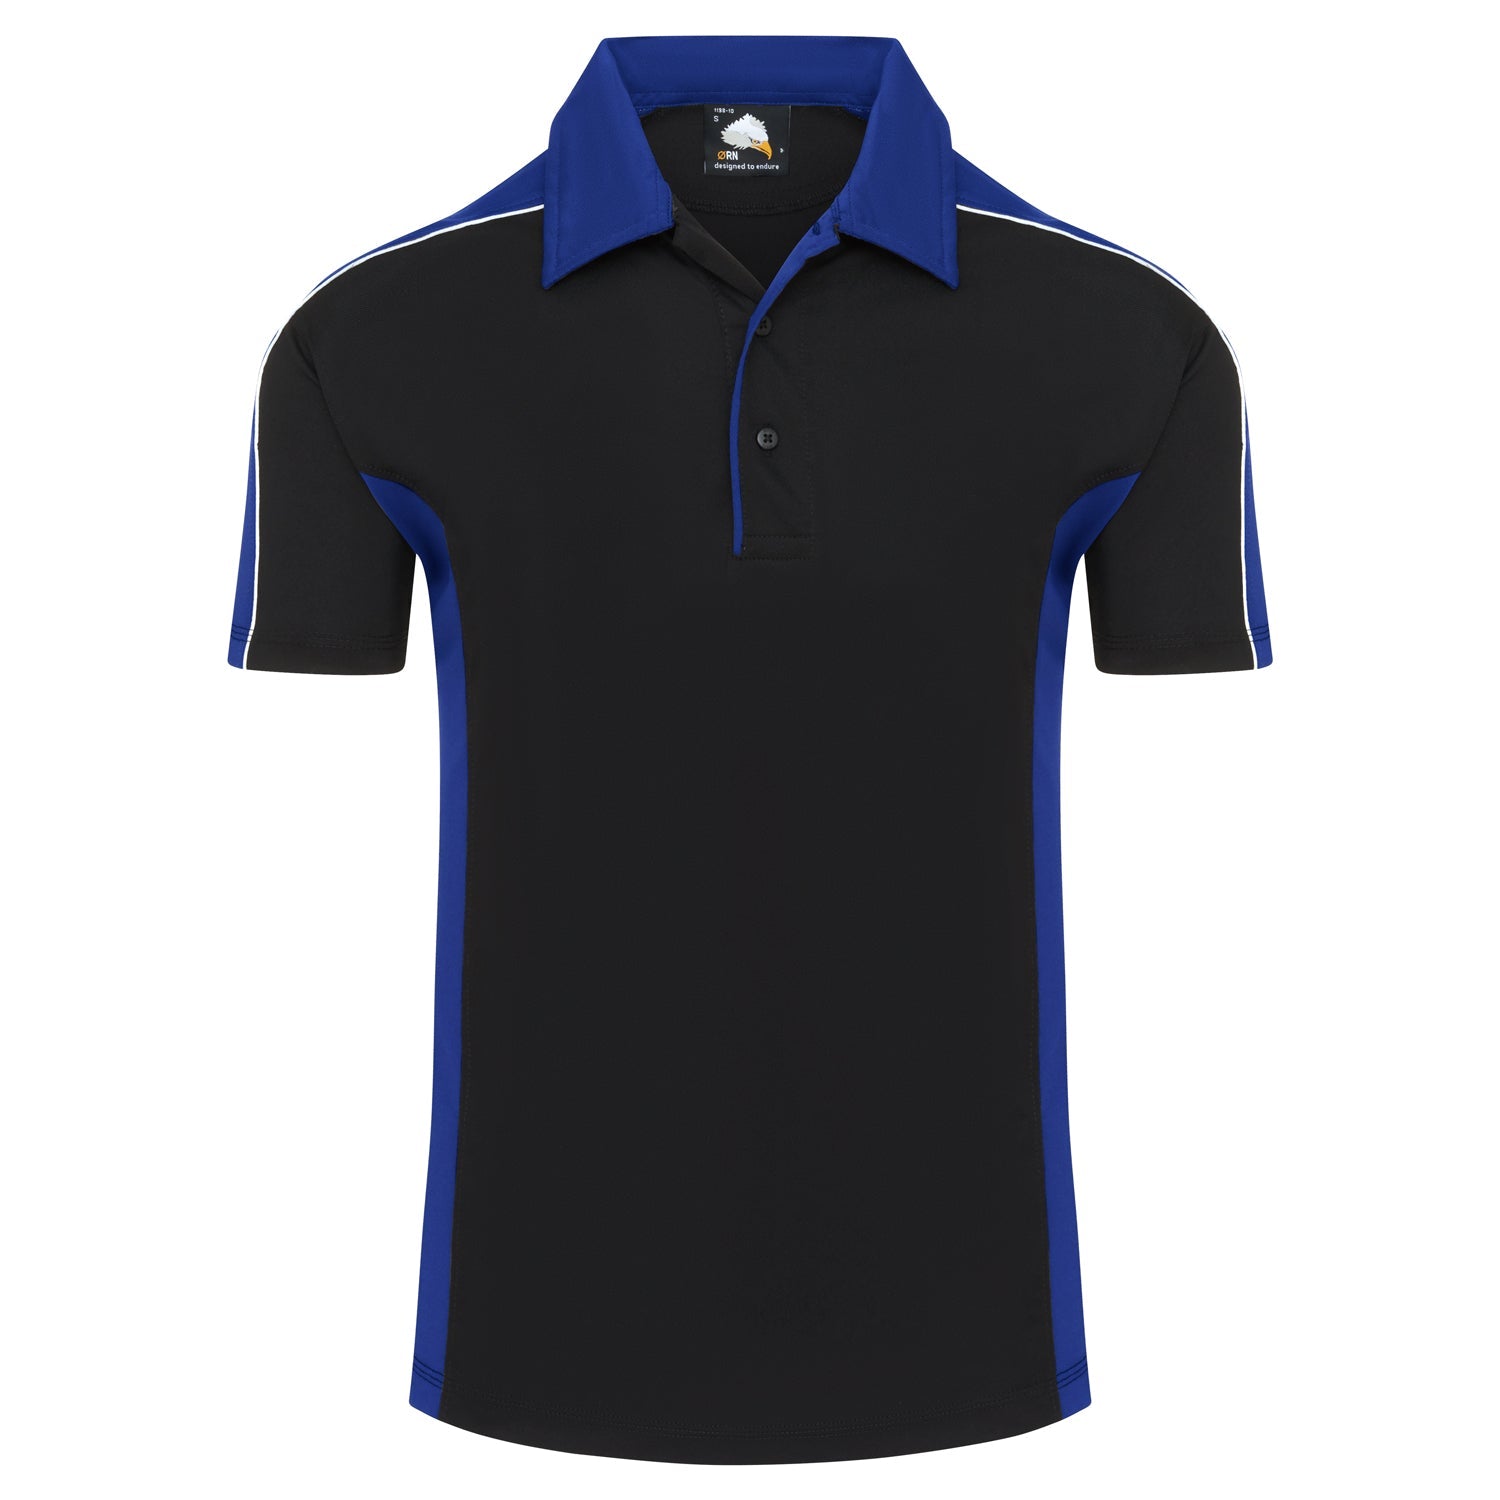 ORN Avocet Wicking Poloshirt - Black/Royal Blue